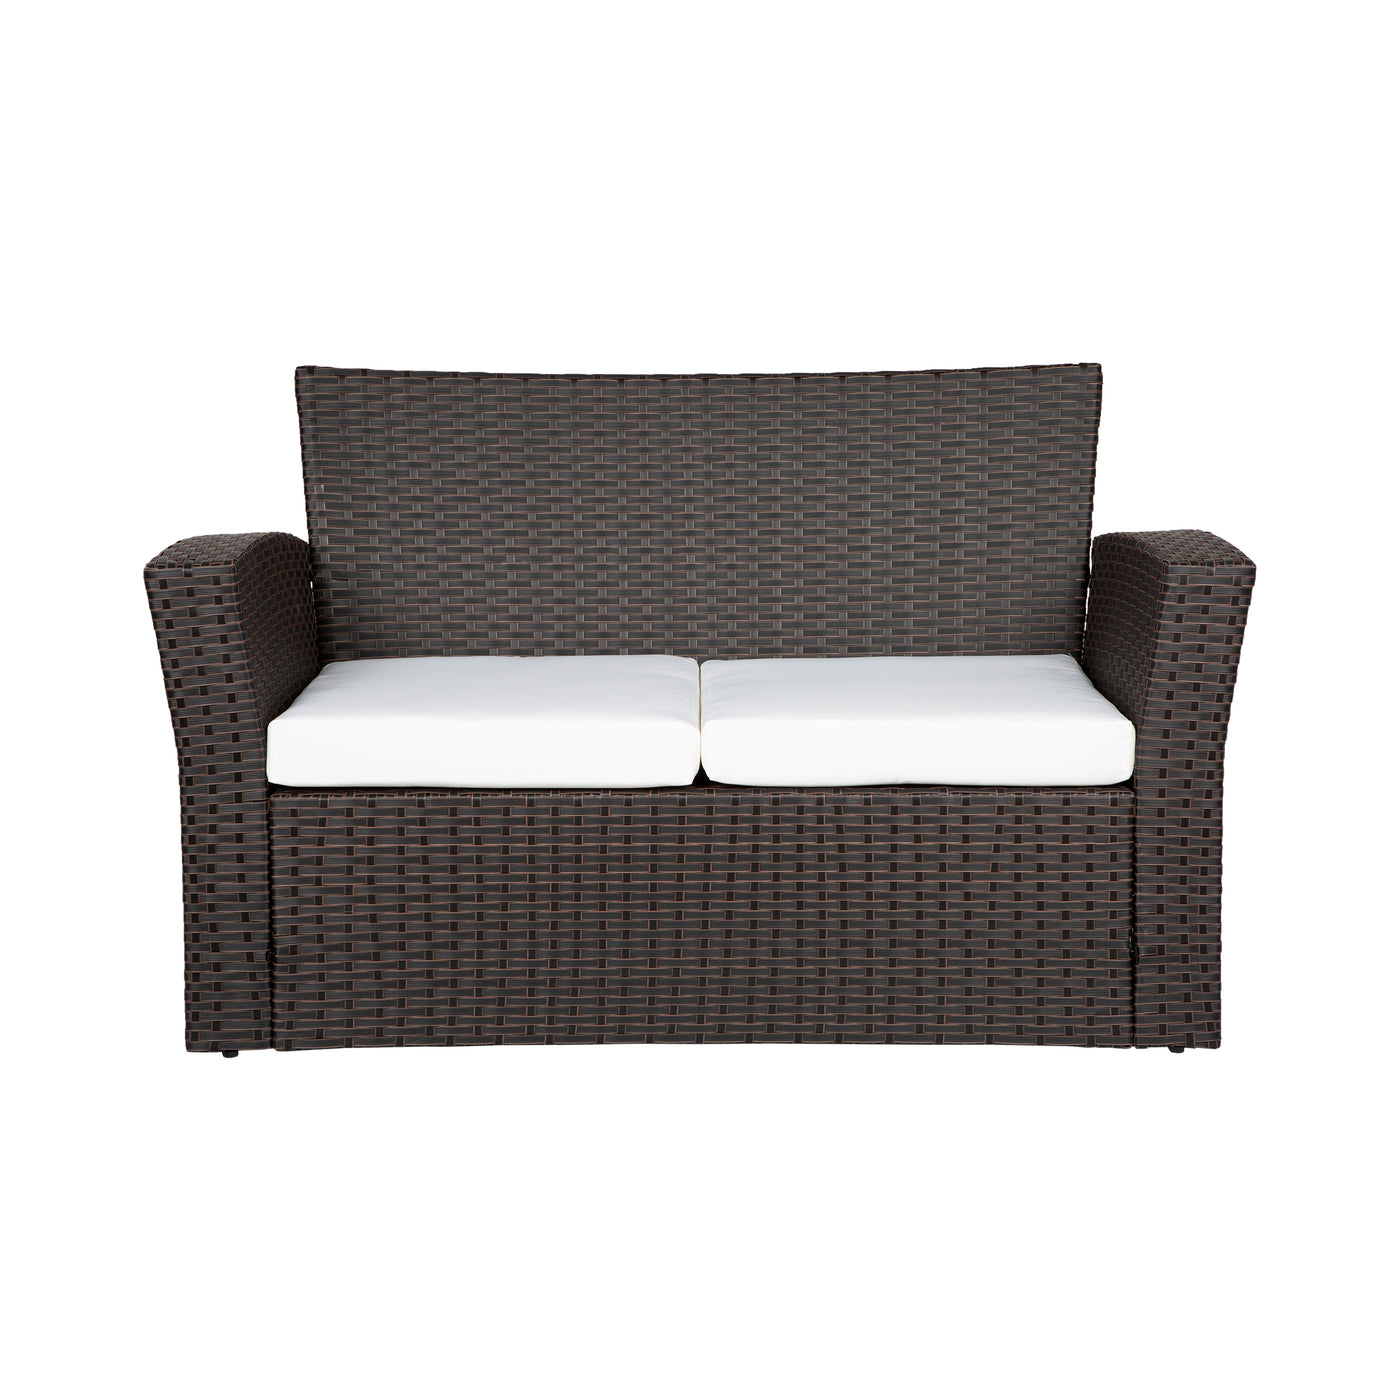 Coastal Outdoor Patio Sofa Seat Cushion (Set of 2)